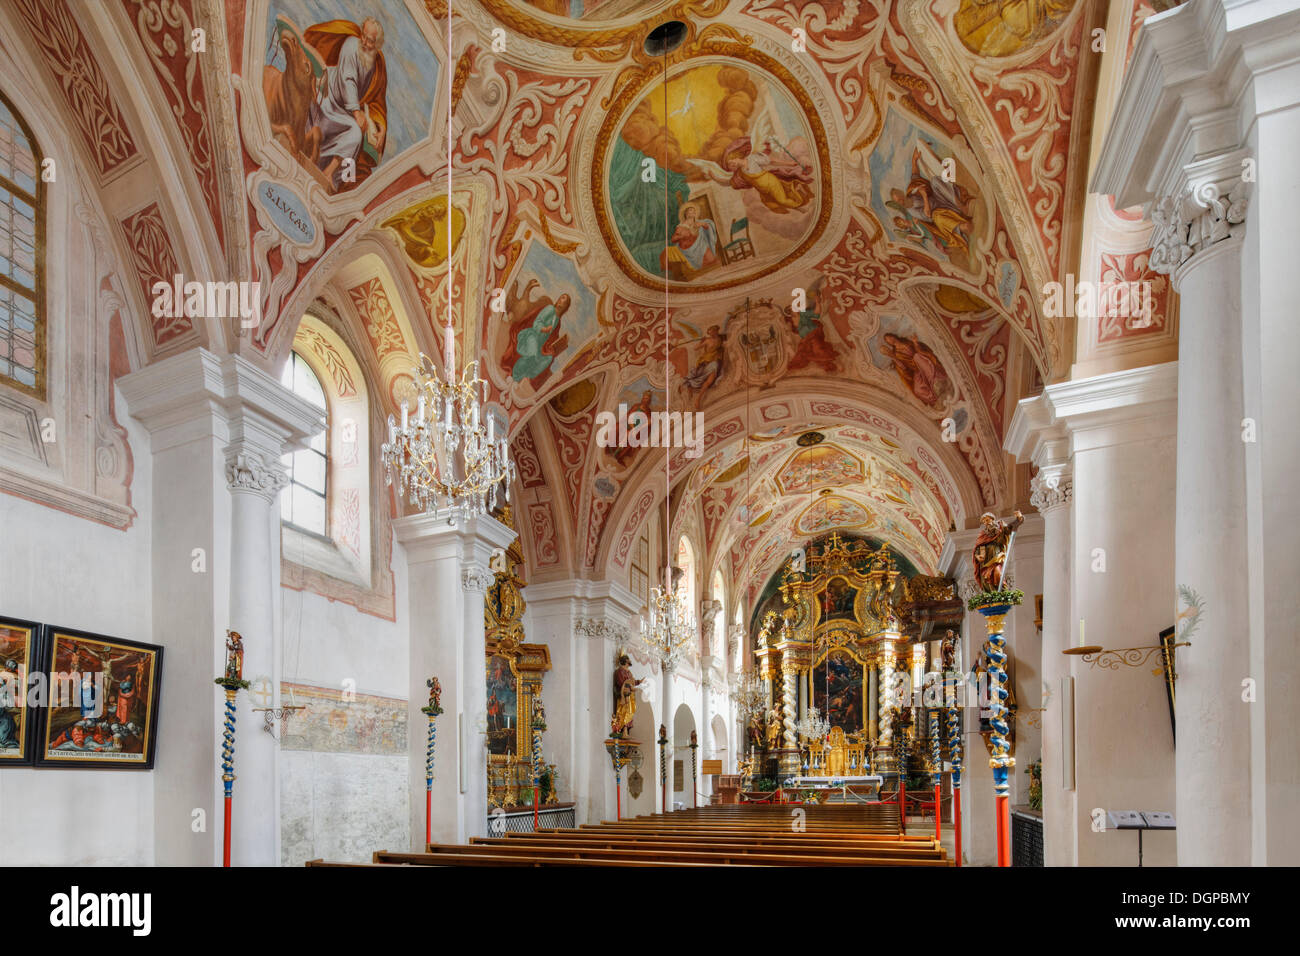 Frescoes by Giovanni Carlone, Parish Church of Mariae Himmelfahrt, Pfarrkirchen im Muehlkreis, Muehlviertel region Stock Photo